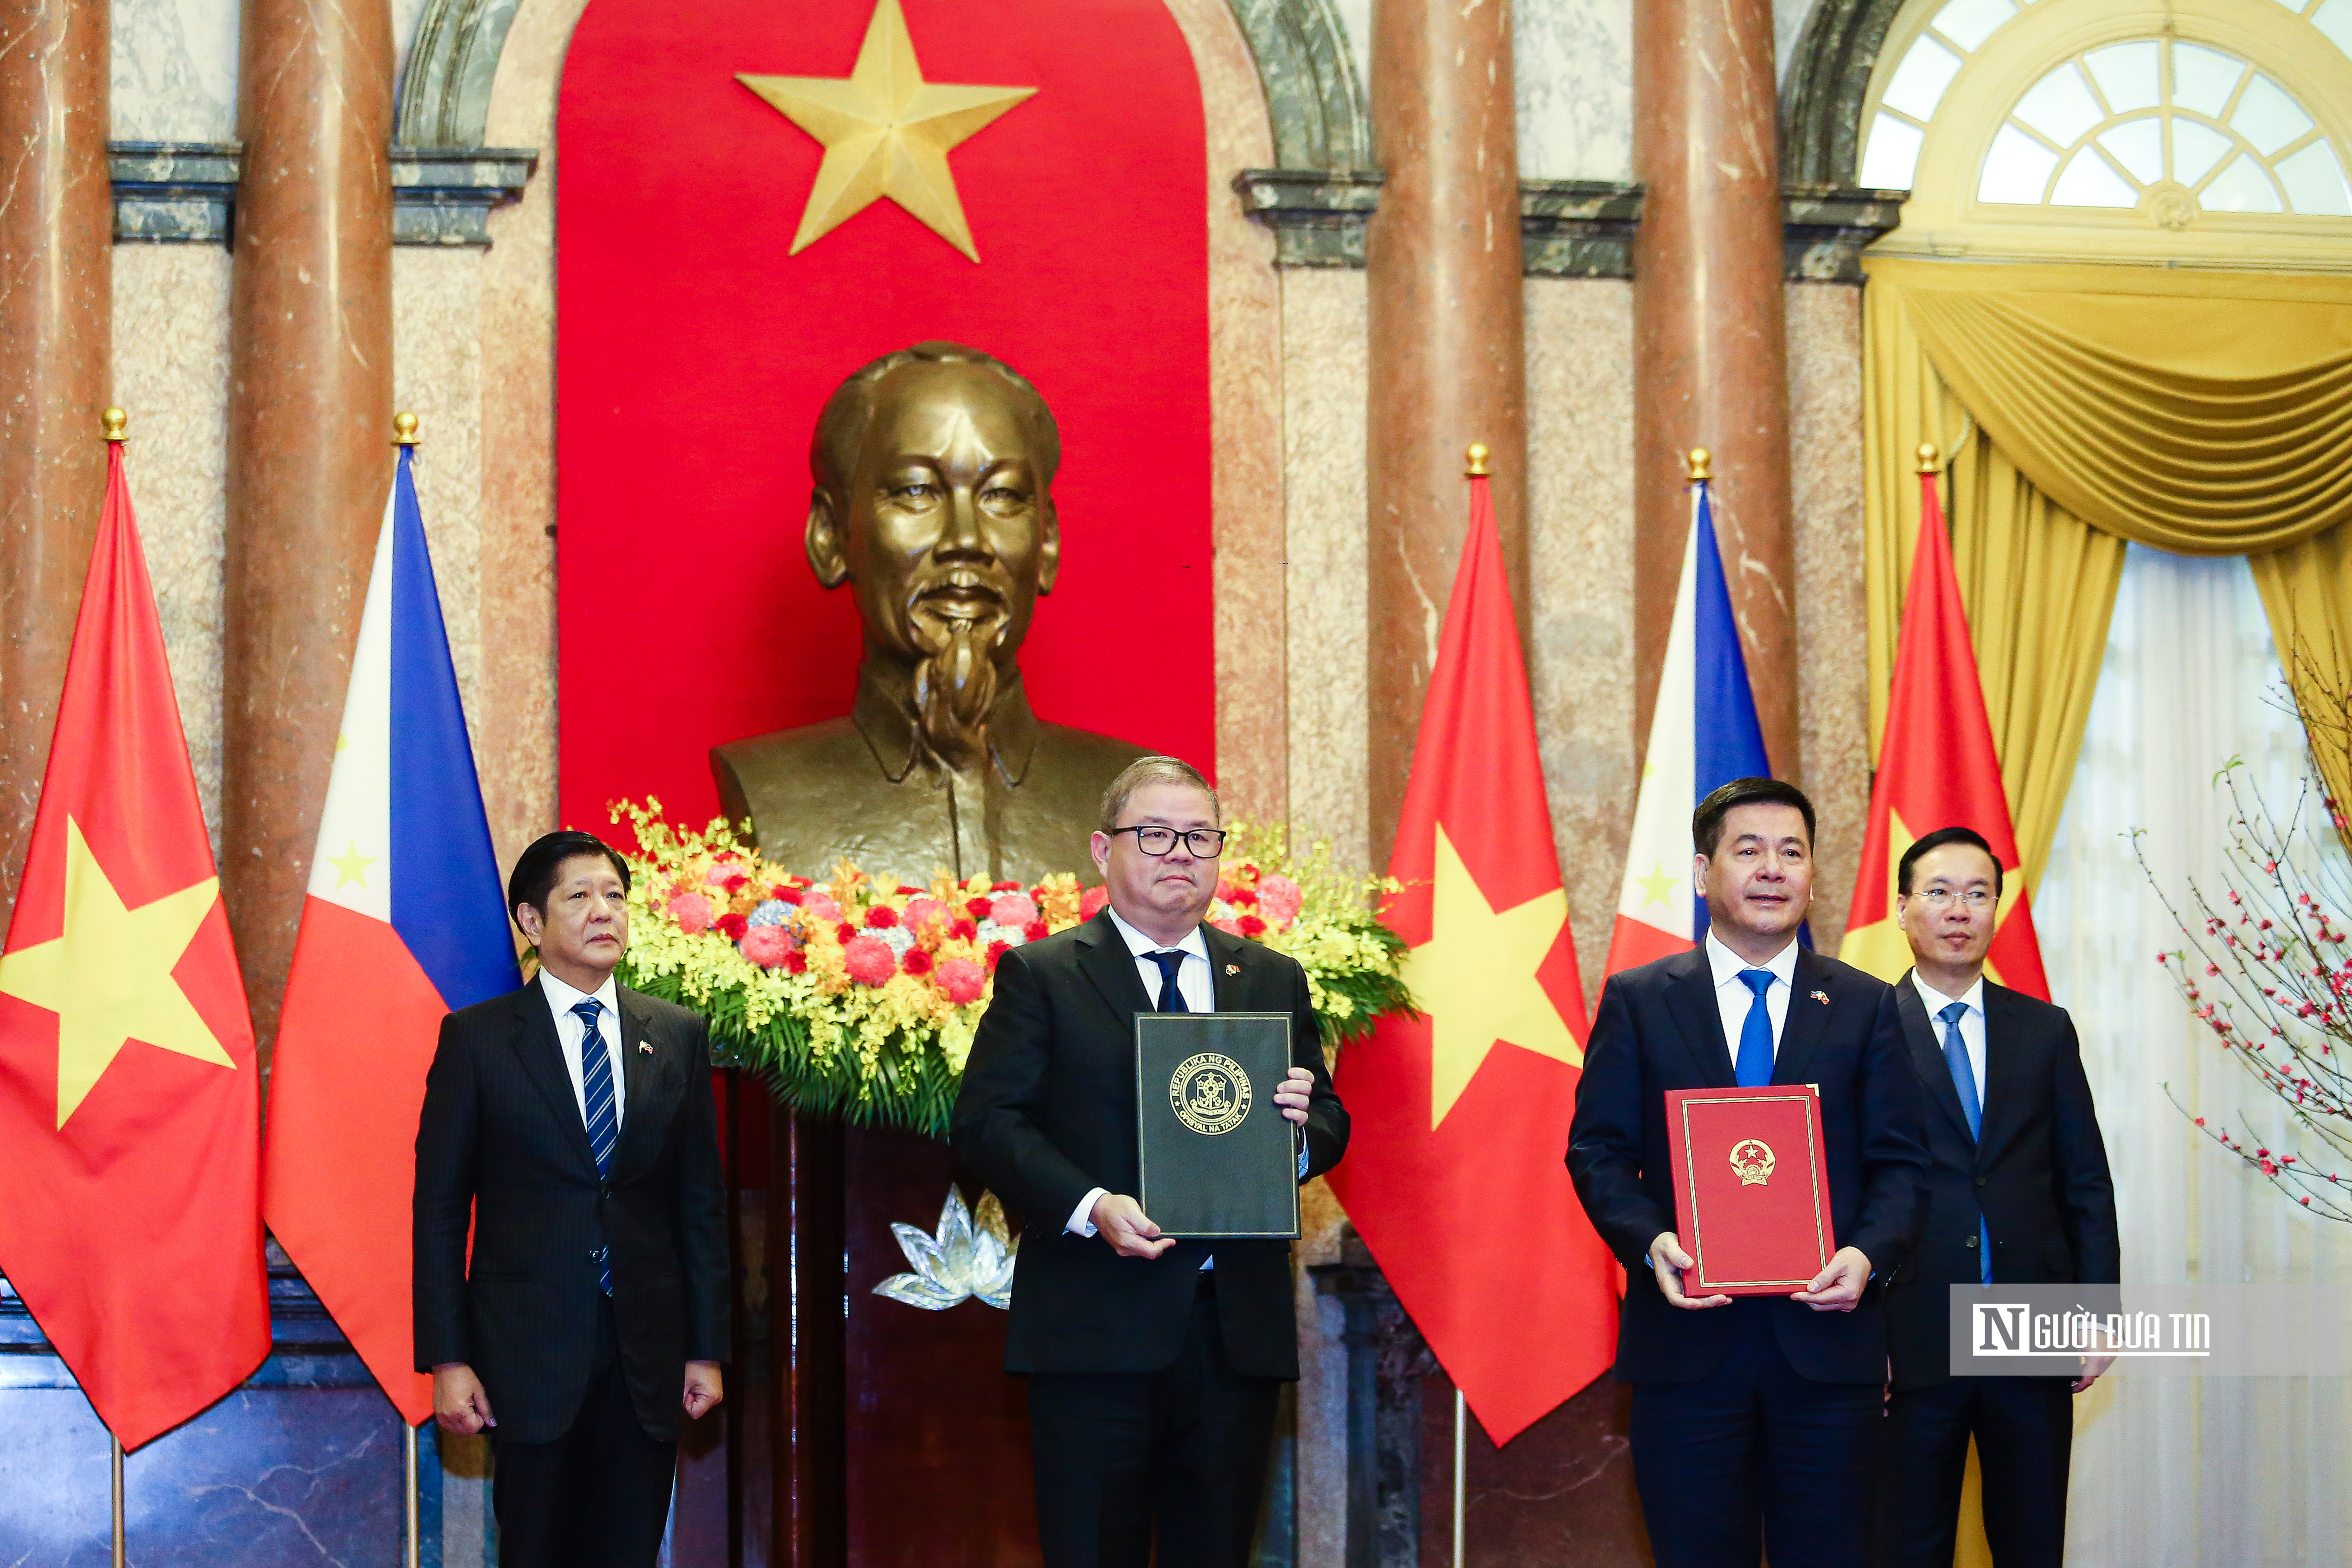 Tiêu điểm - Bắn 21 phát đại bác chào mừng Tổng thống Philippines thăm Việt Nam (Hình 13).